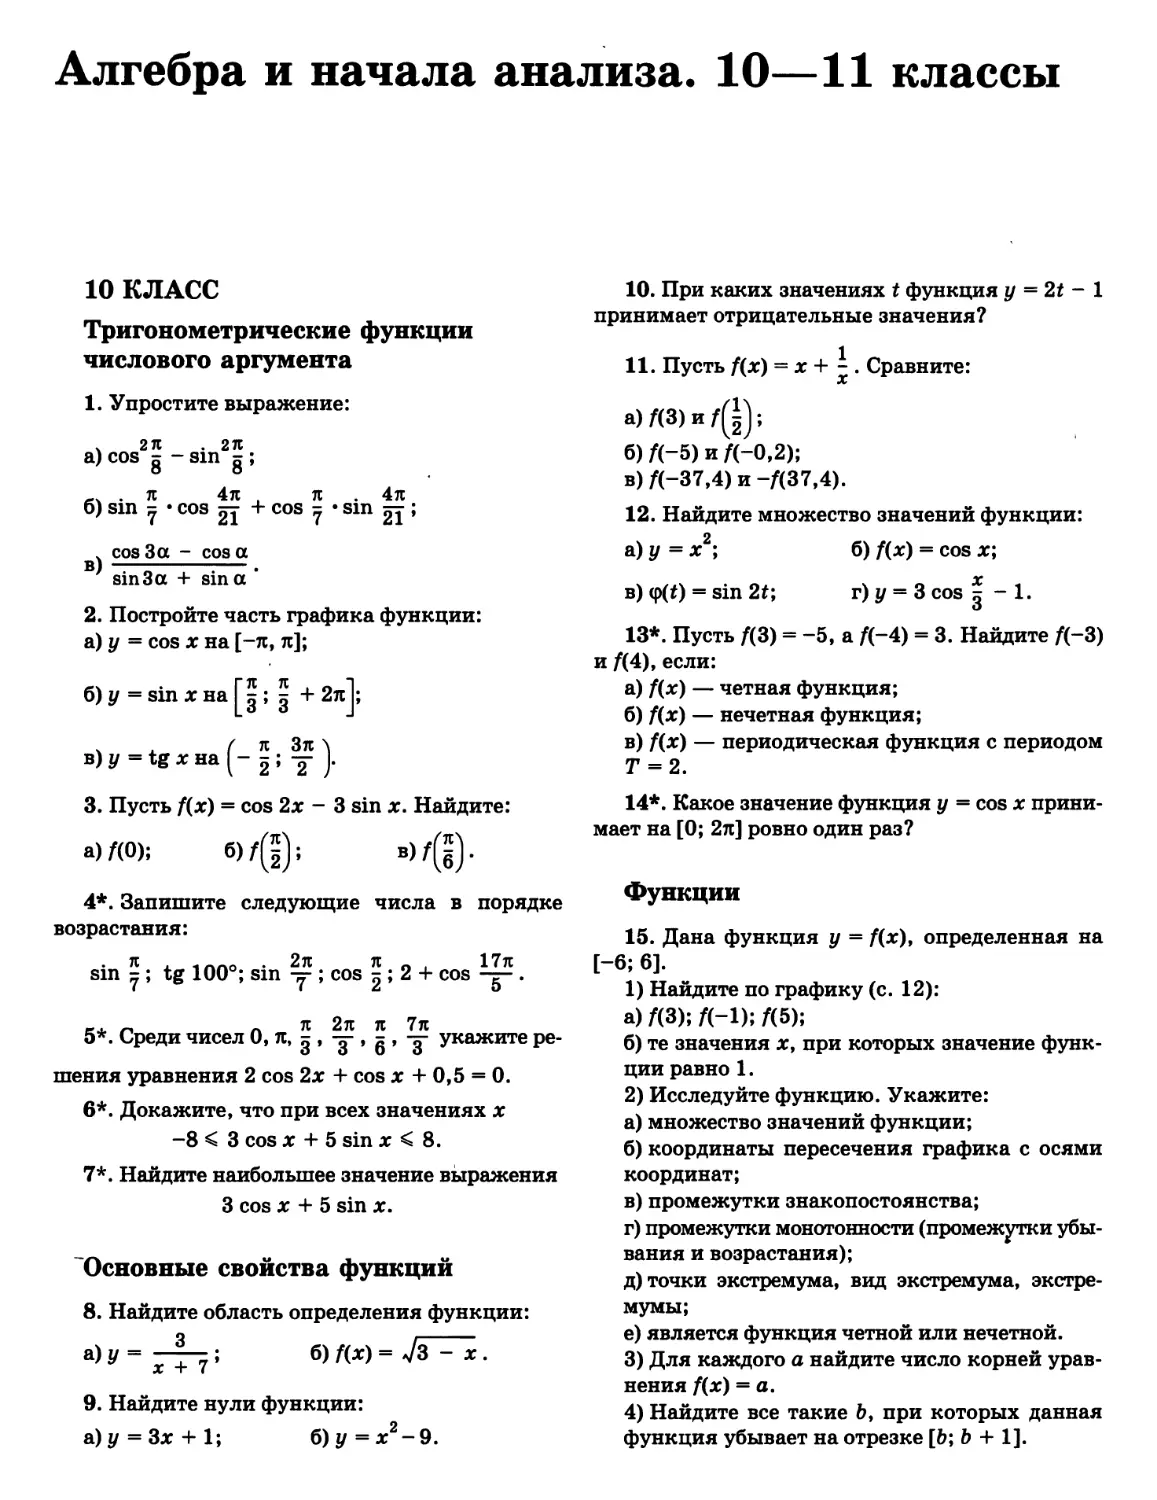 Алгебра и начала анализа. 10—11 классы
Свойства функций
Тригонометрические функции